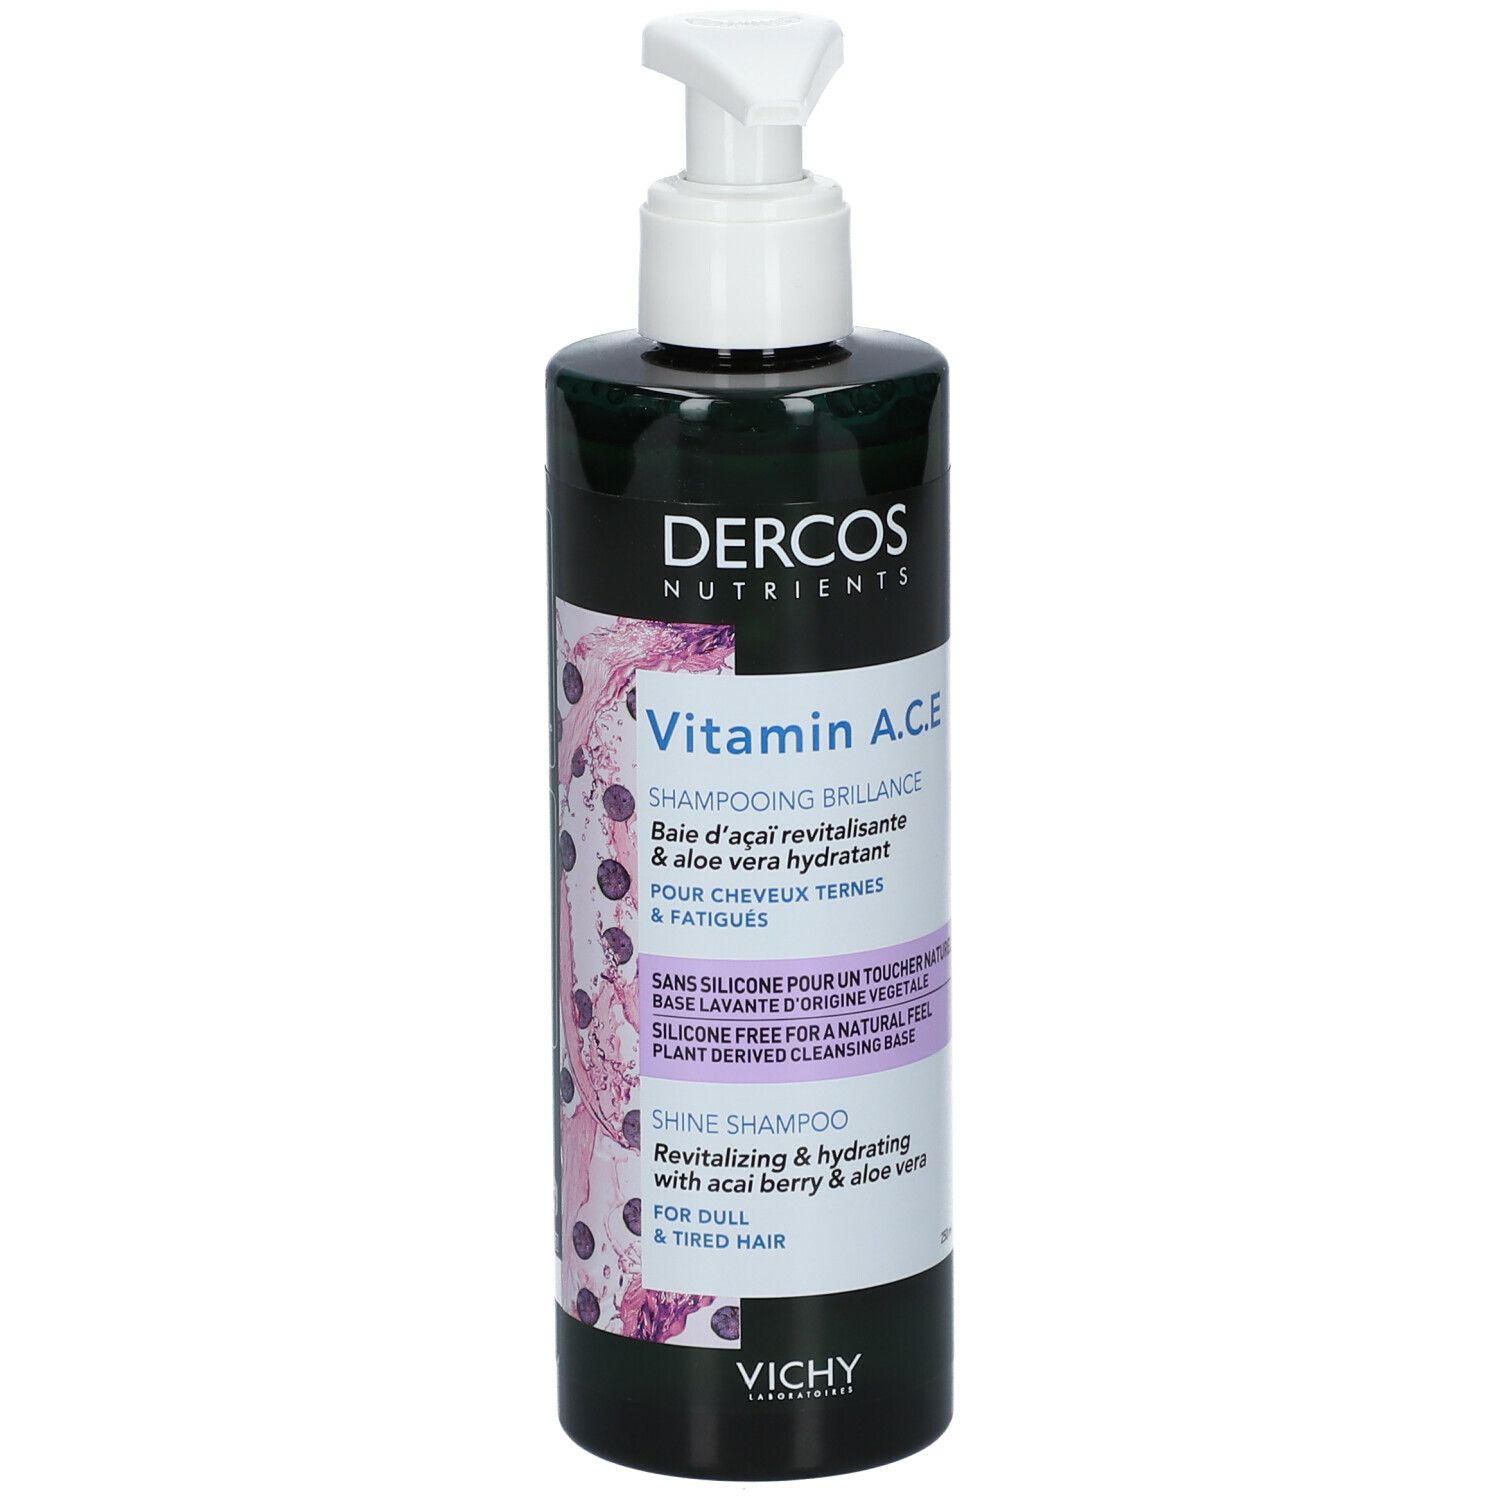 VICHY Dercos Nutrients Shampooing Vitamin A.C.E